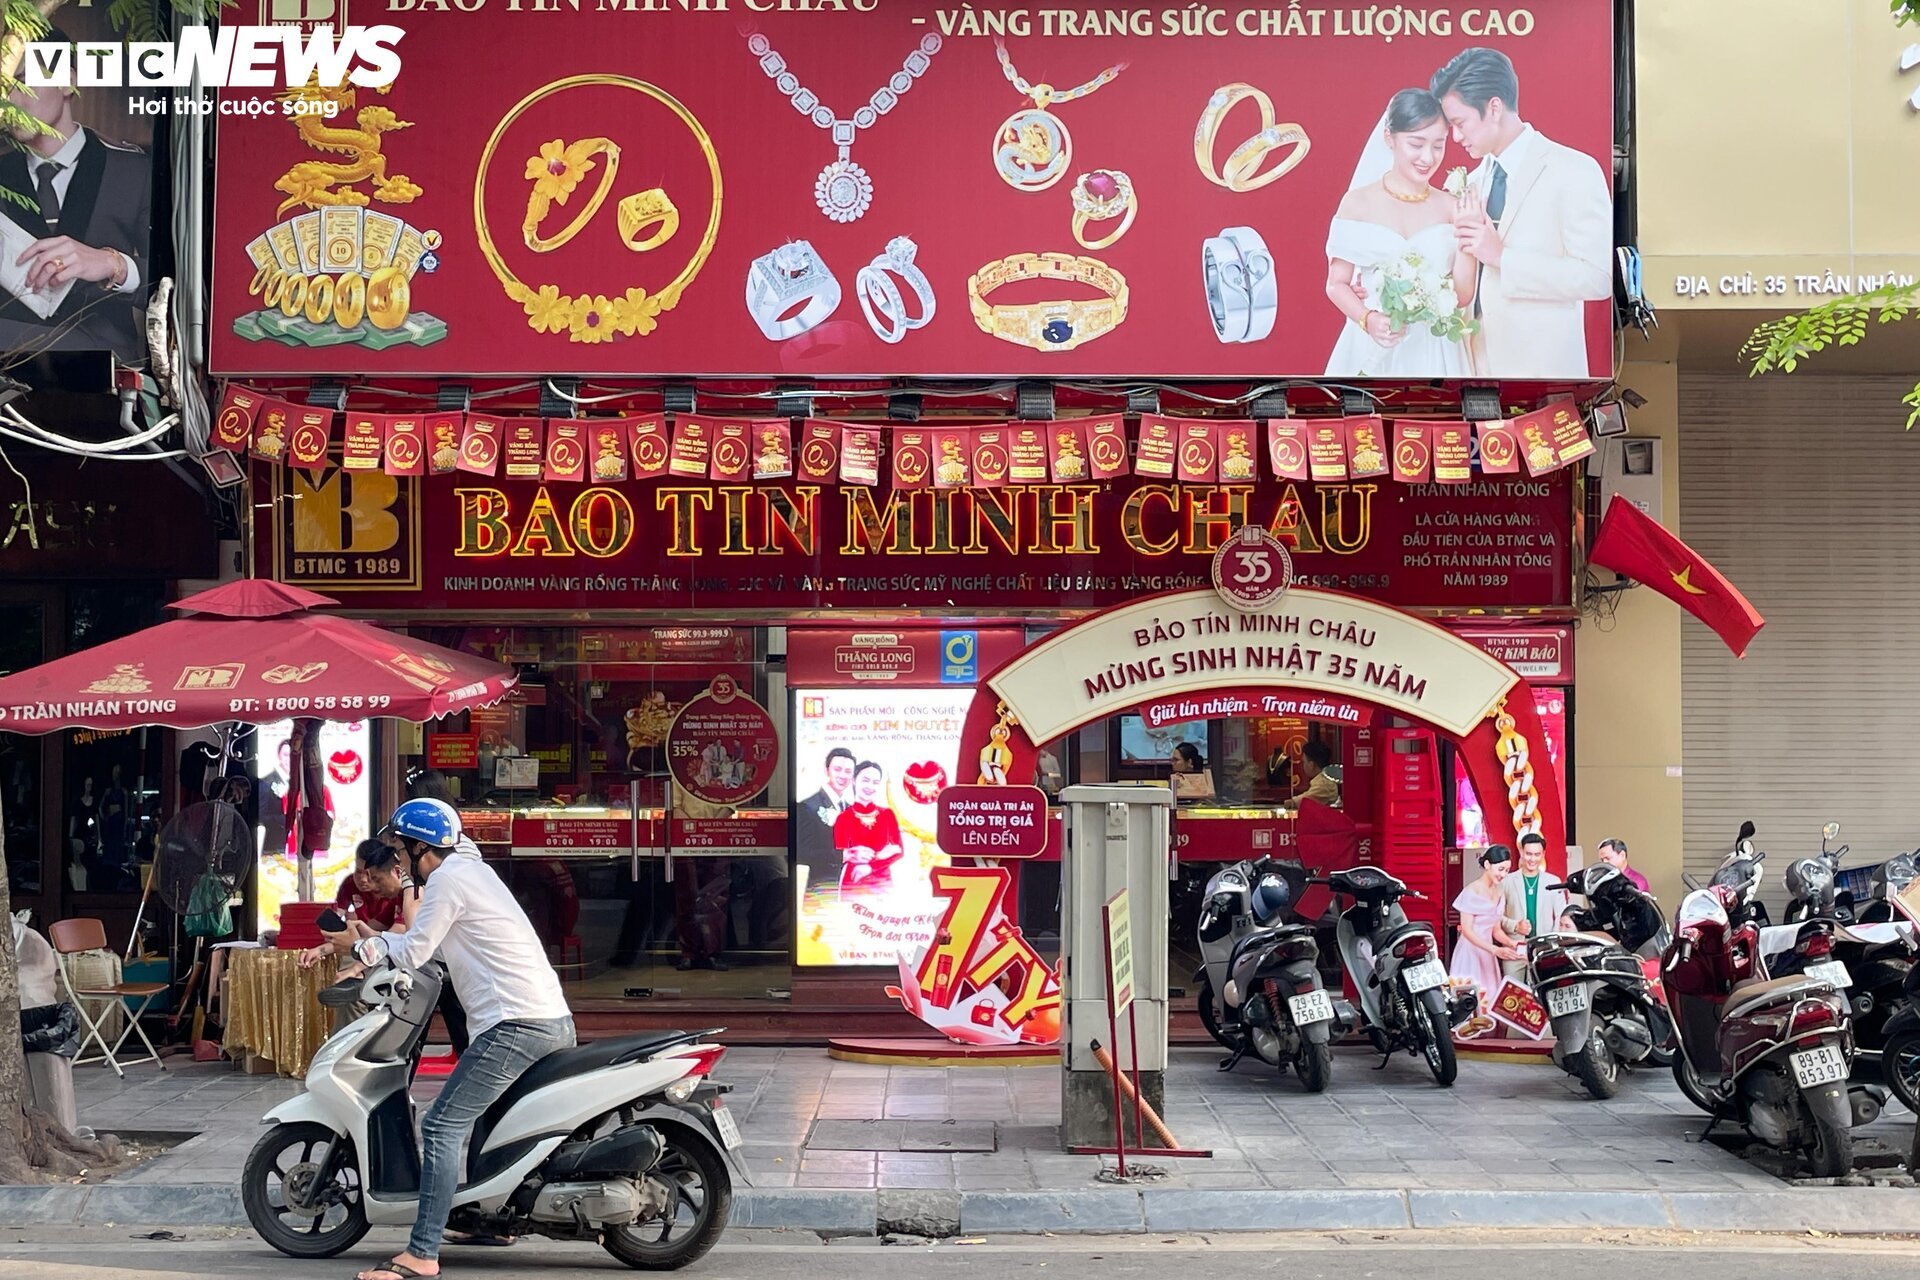 Giá vàng biến động mạnh, cửa hàng ở Hà Nội nhiều lúc ngừng bán- Ảnh 1.